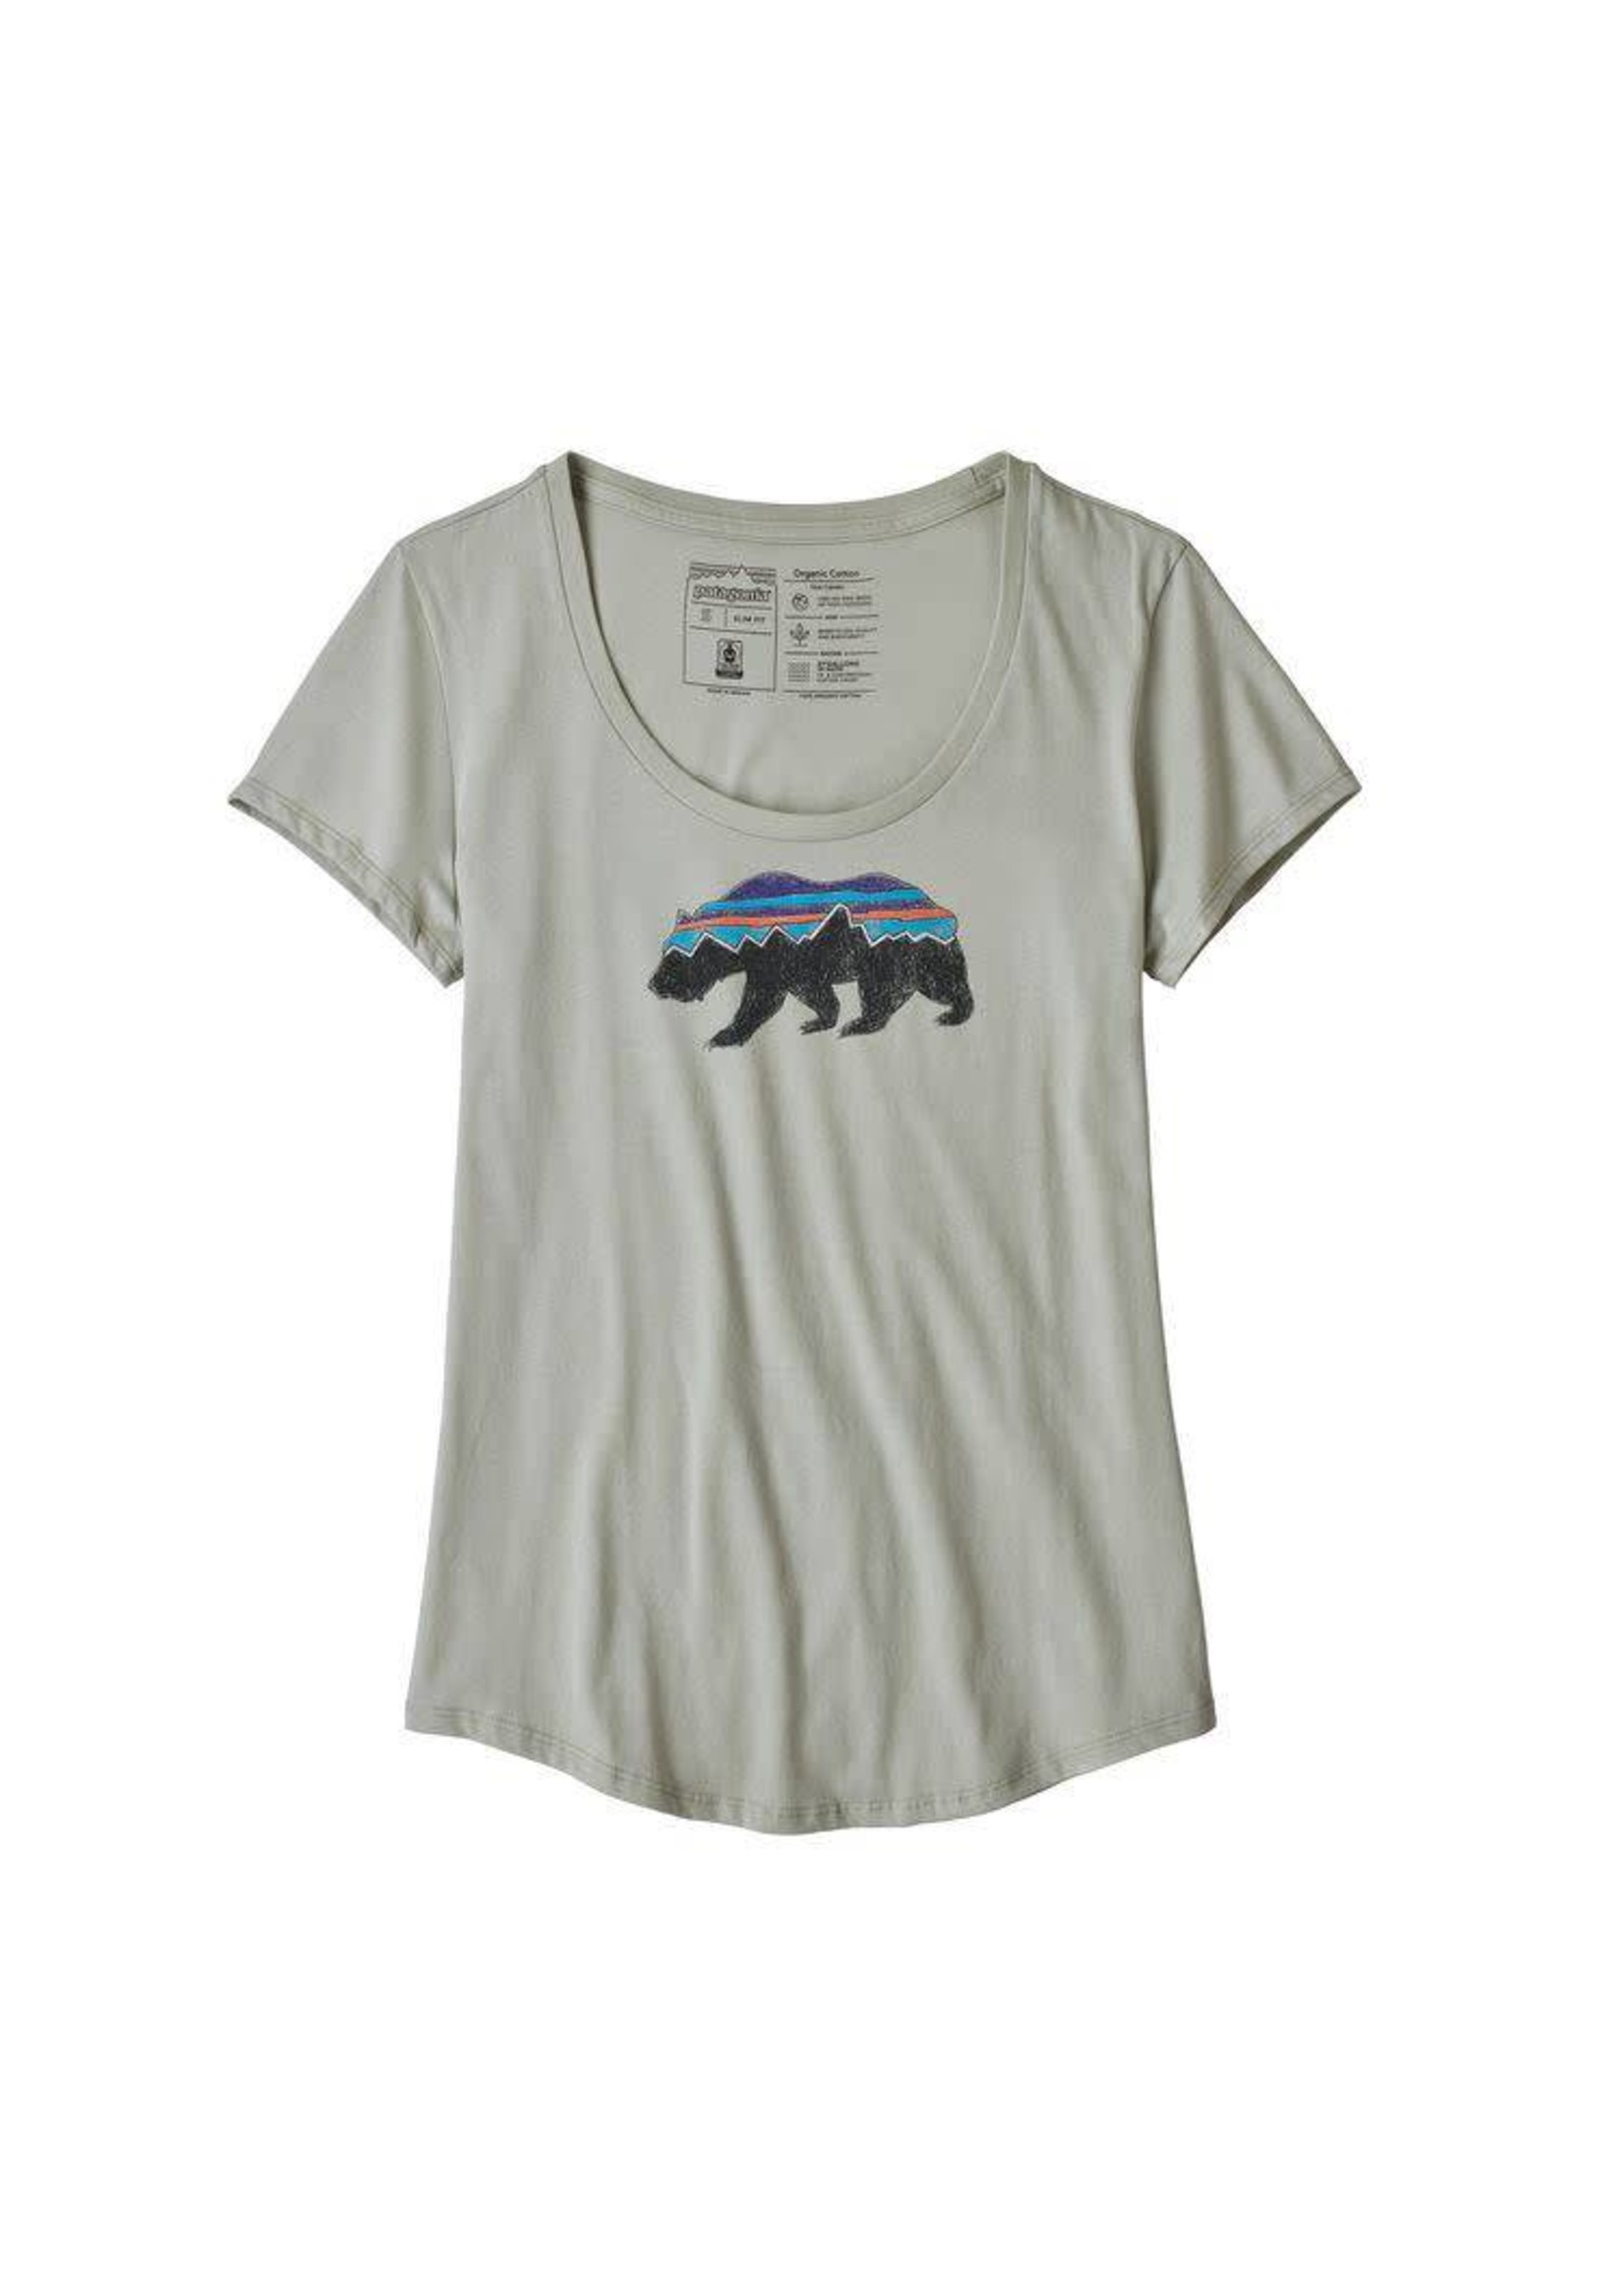 Patagonia Patagonia Women's Fitz Roy Bear Organic Scoop T-Shirt